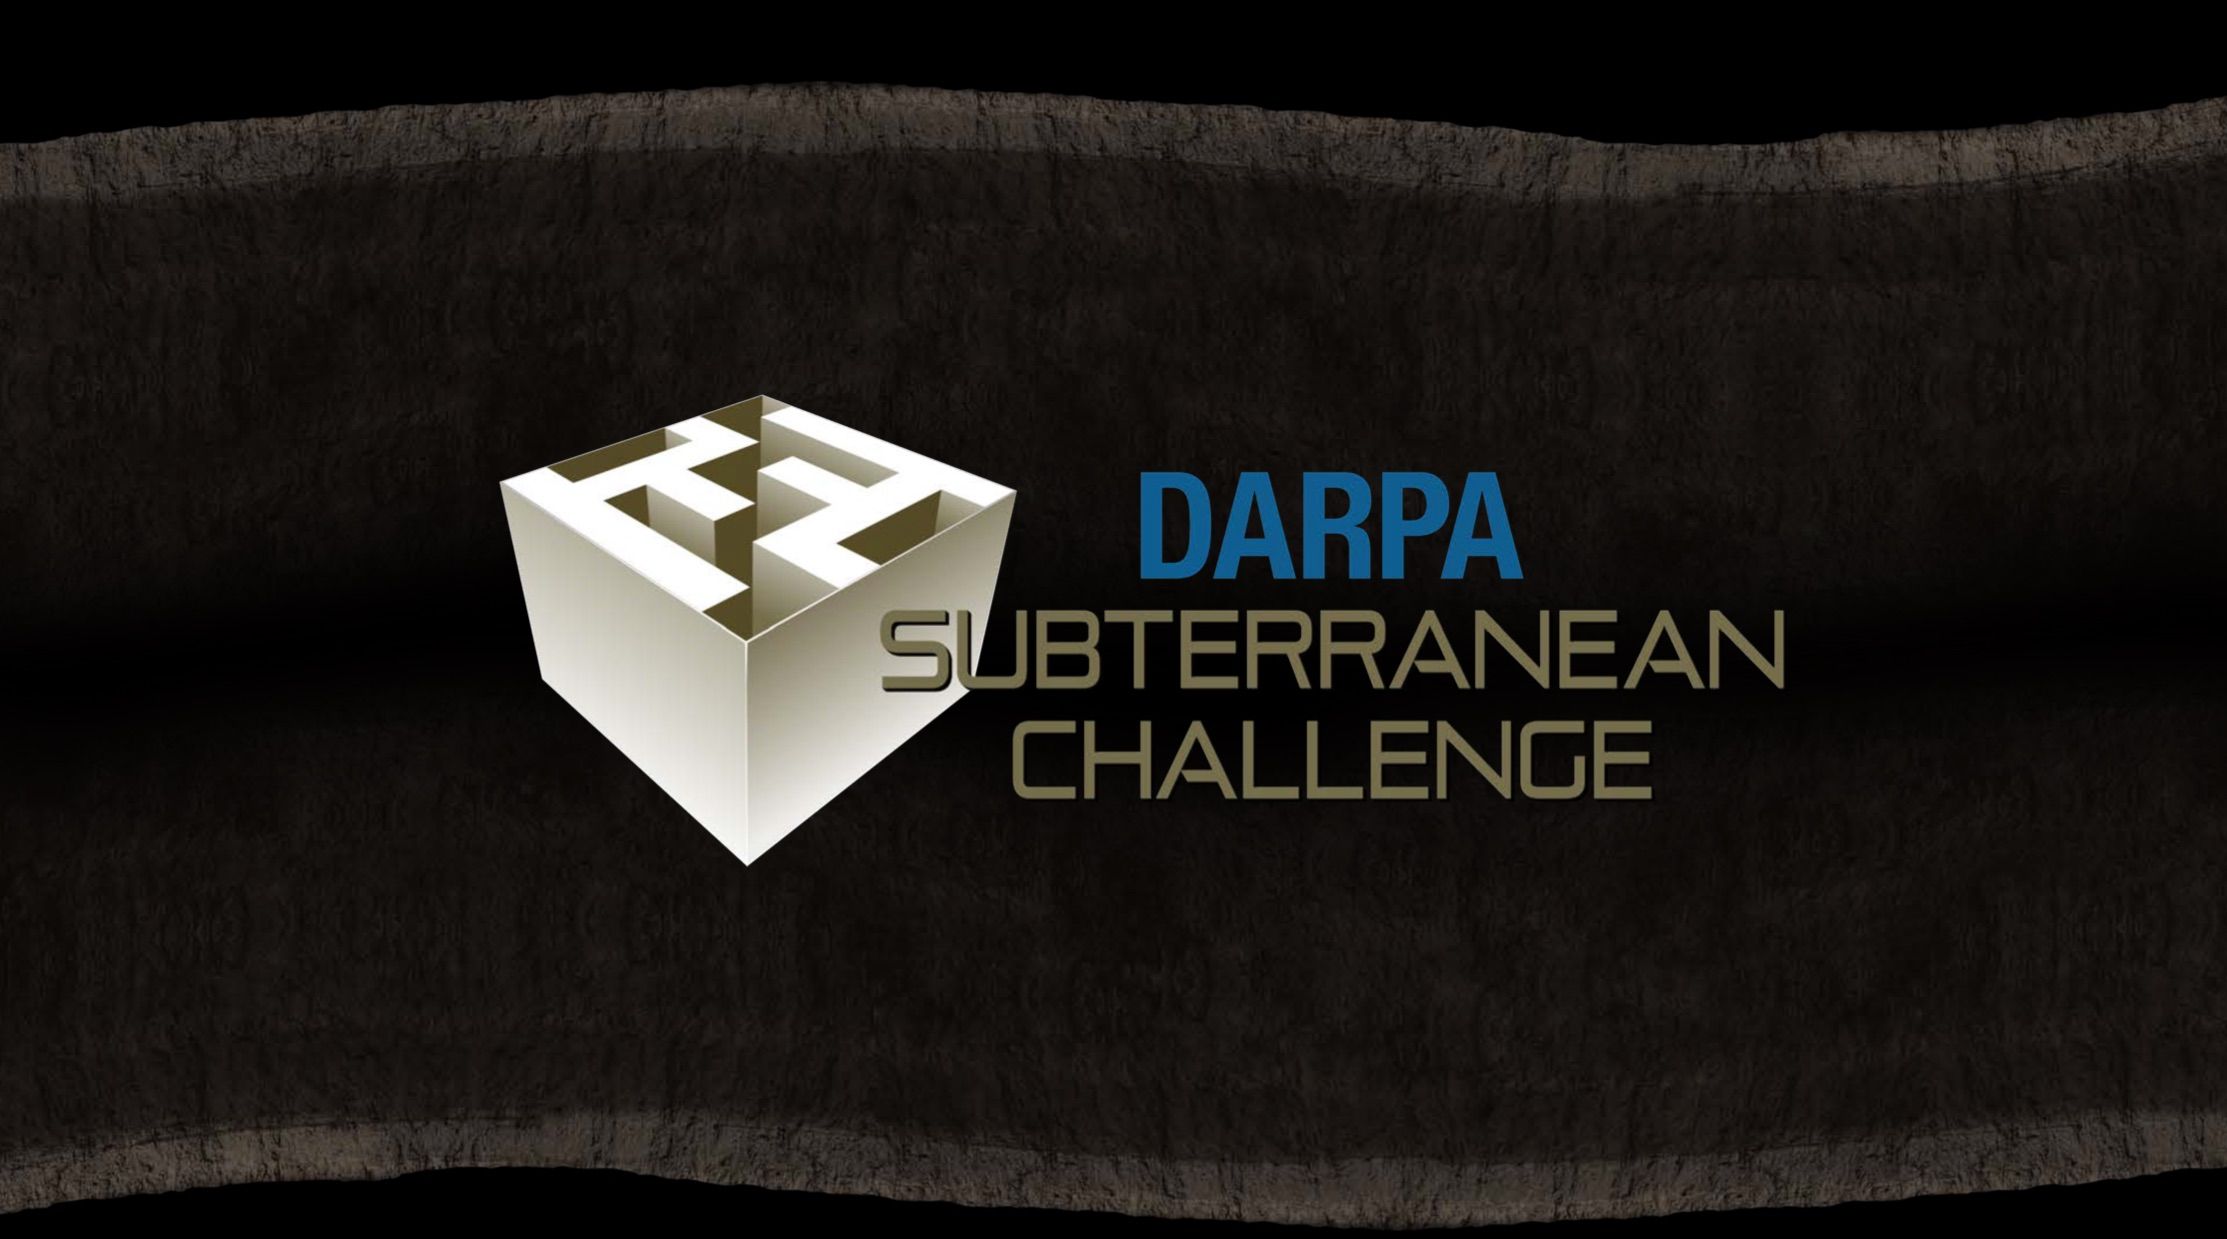 DARPA Subterranean Challenge